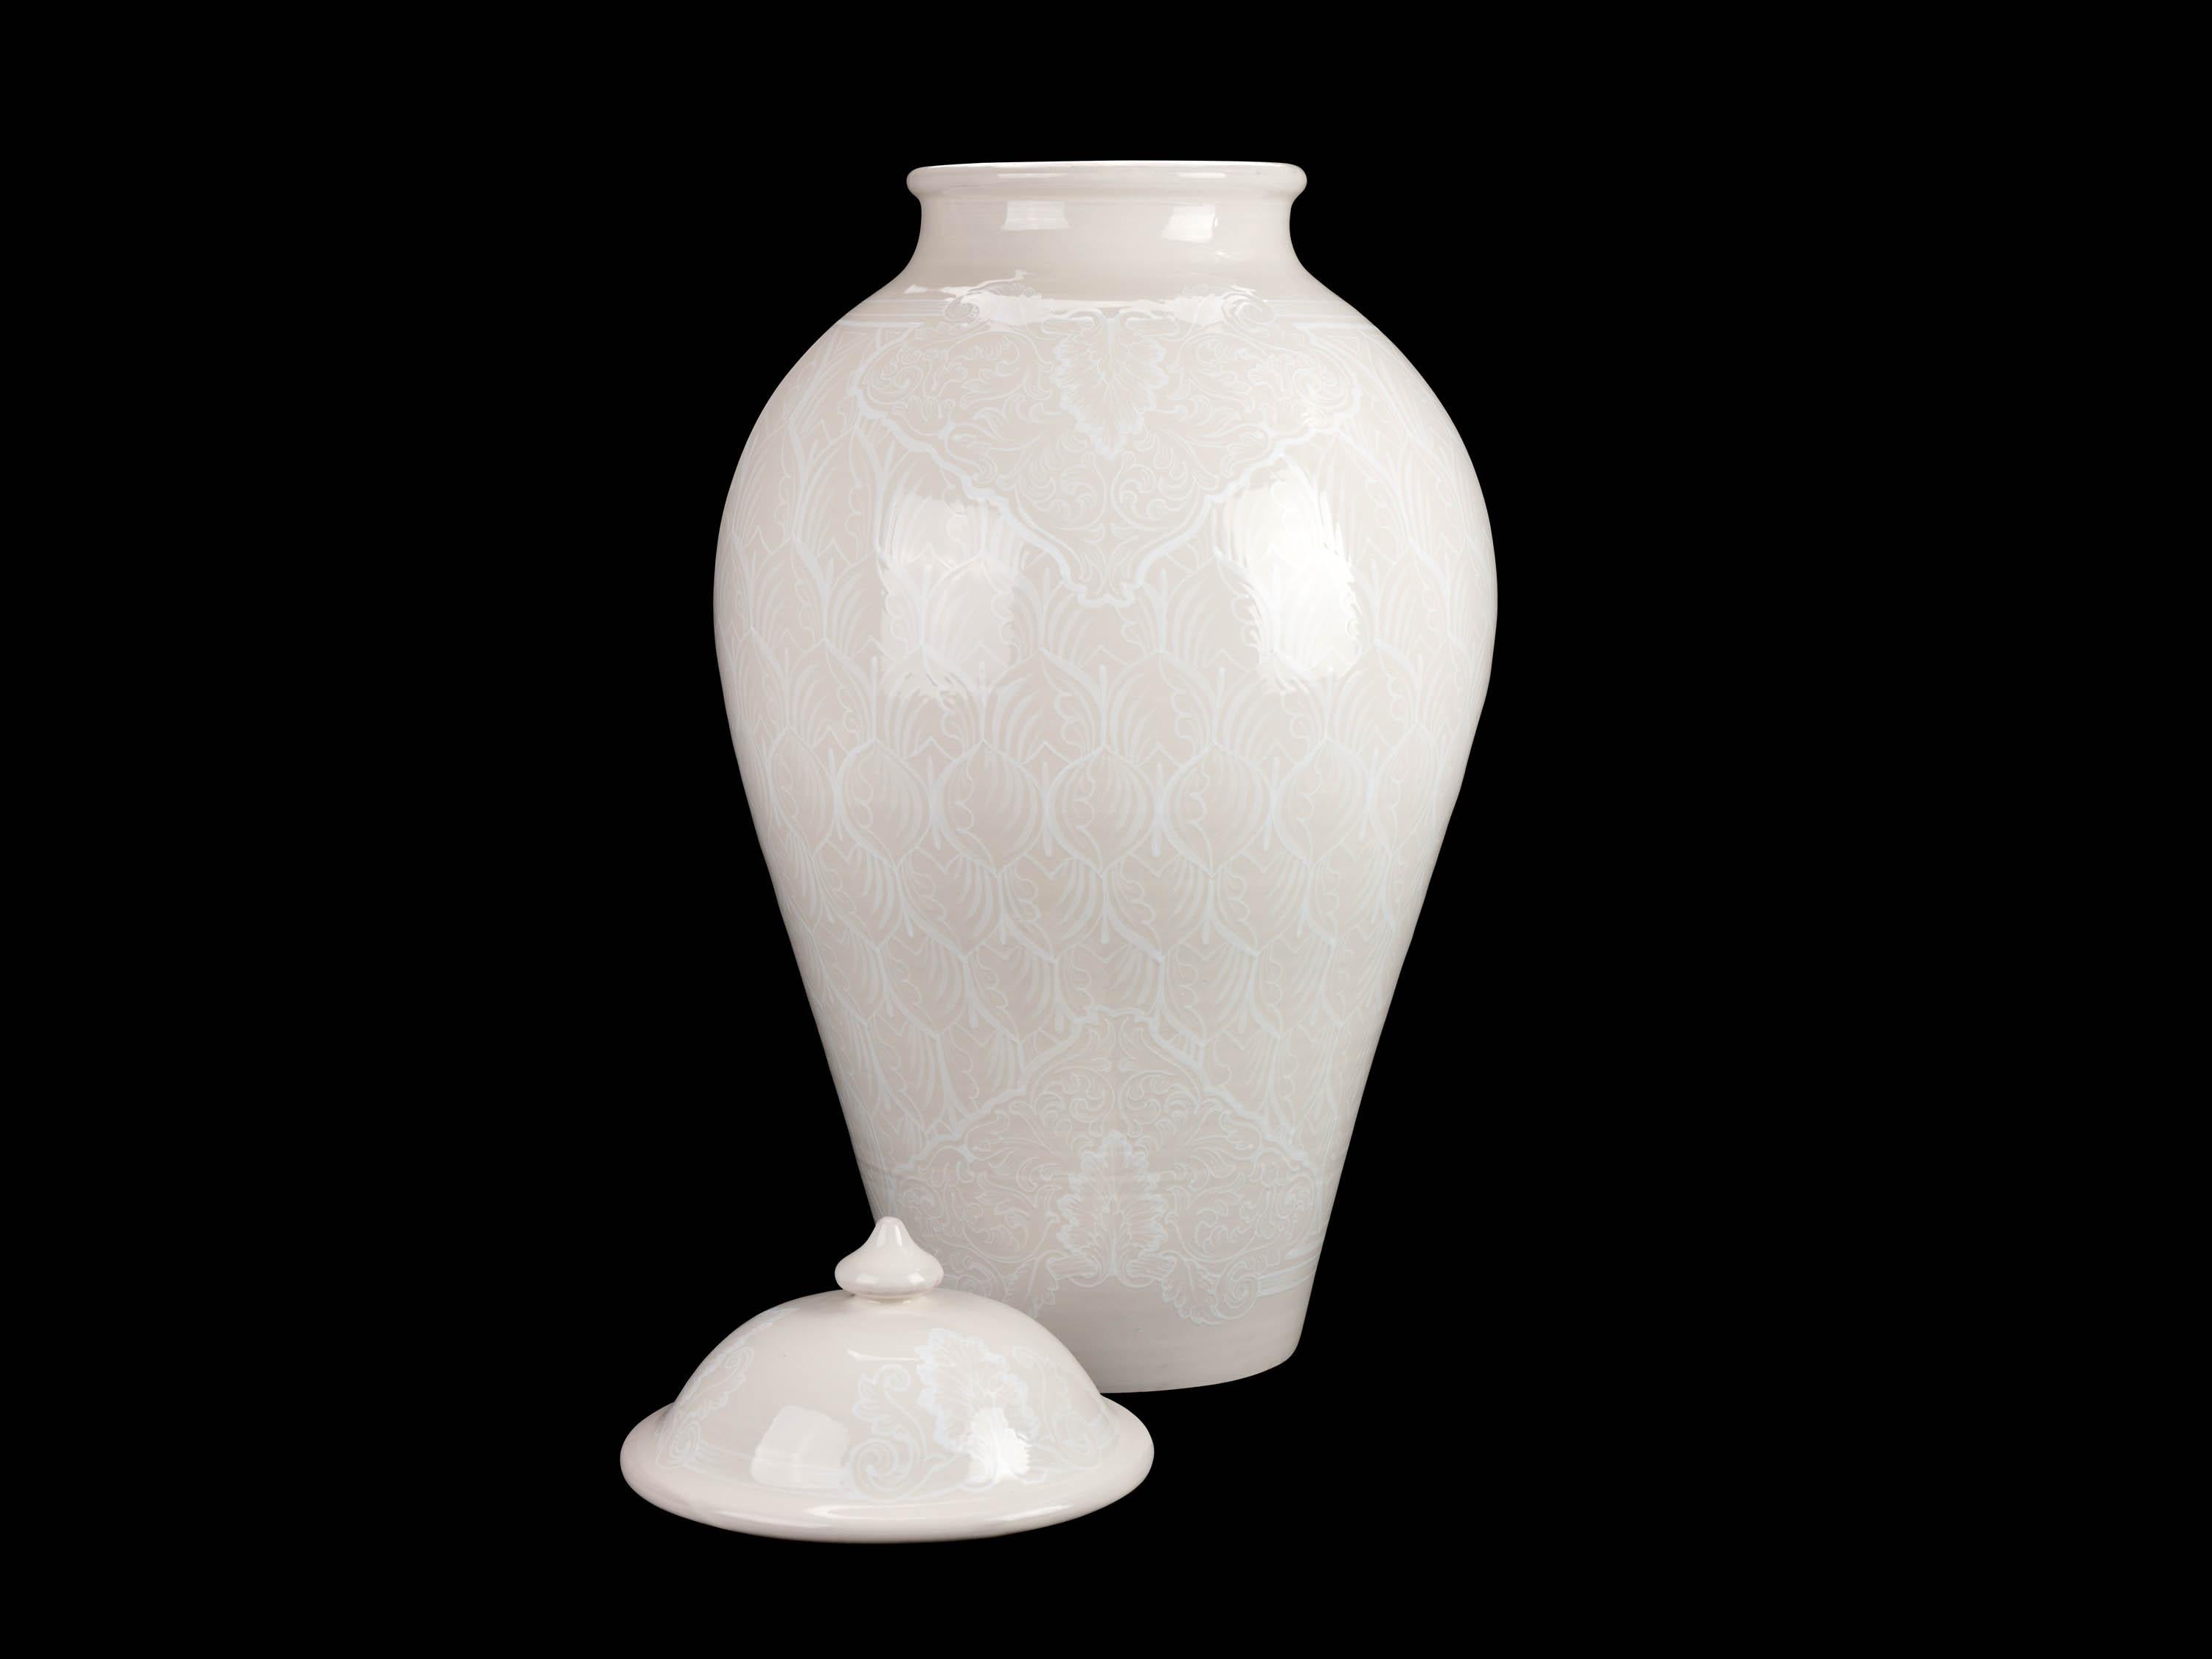 Vase Potiche Jar Lid Decorated Ornament Decorative Majolica Total White Vessel In New Condition For Sale In Recanati, IT